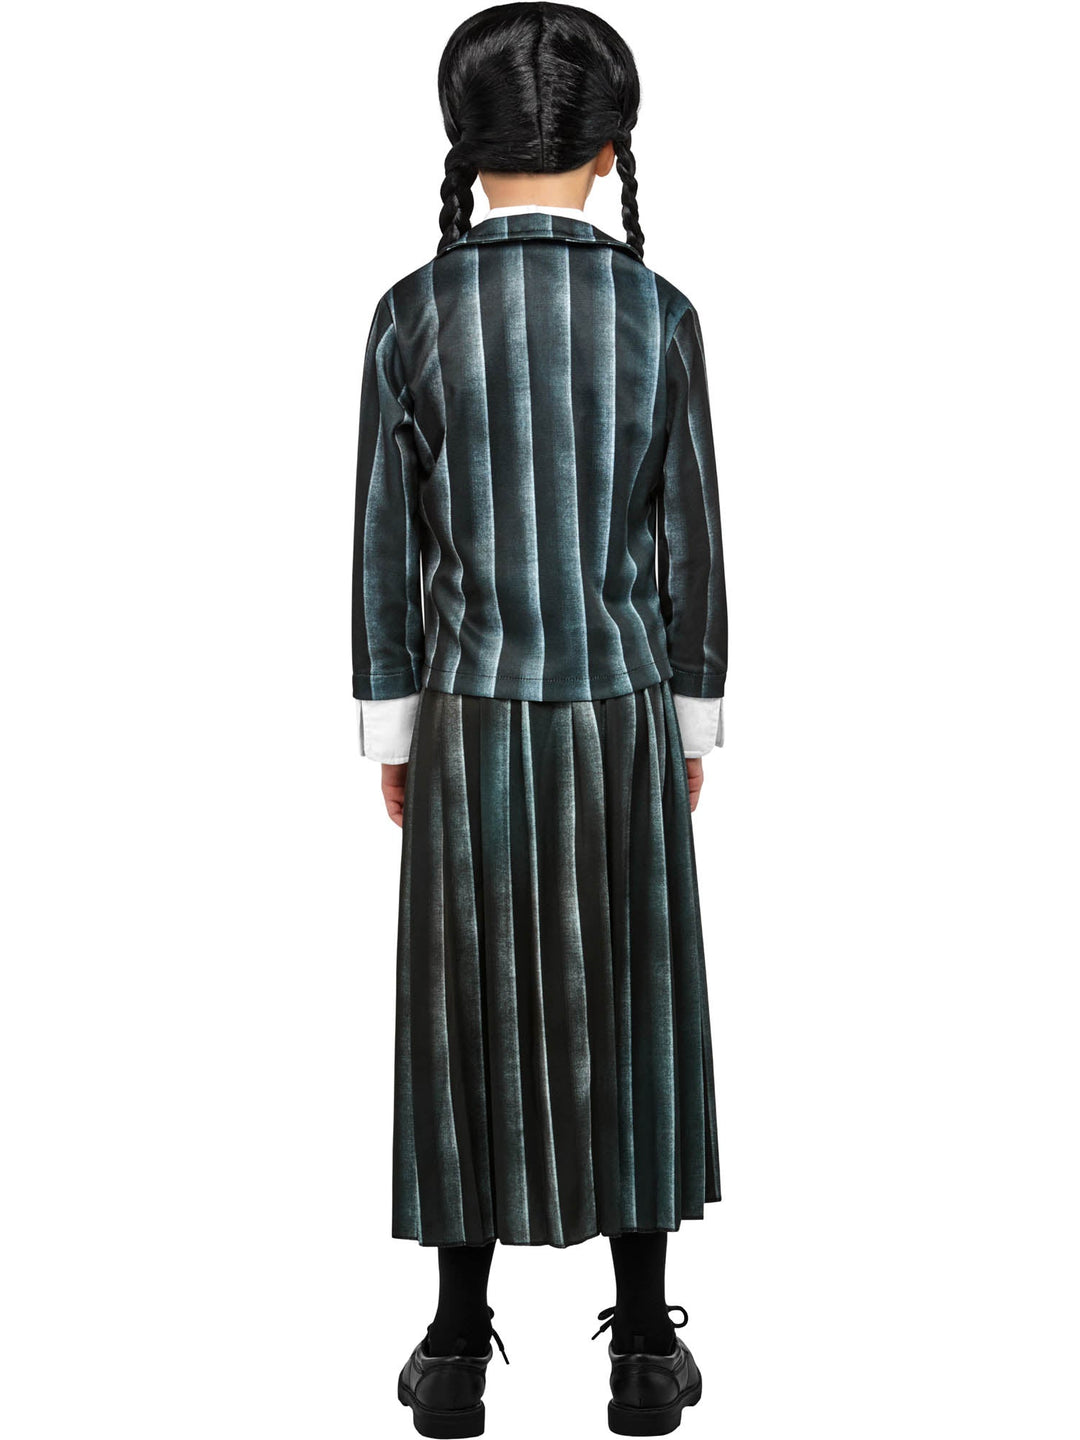 Wednesday Addams Nevermore School Uniform Girls Costume_4